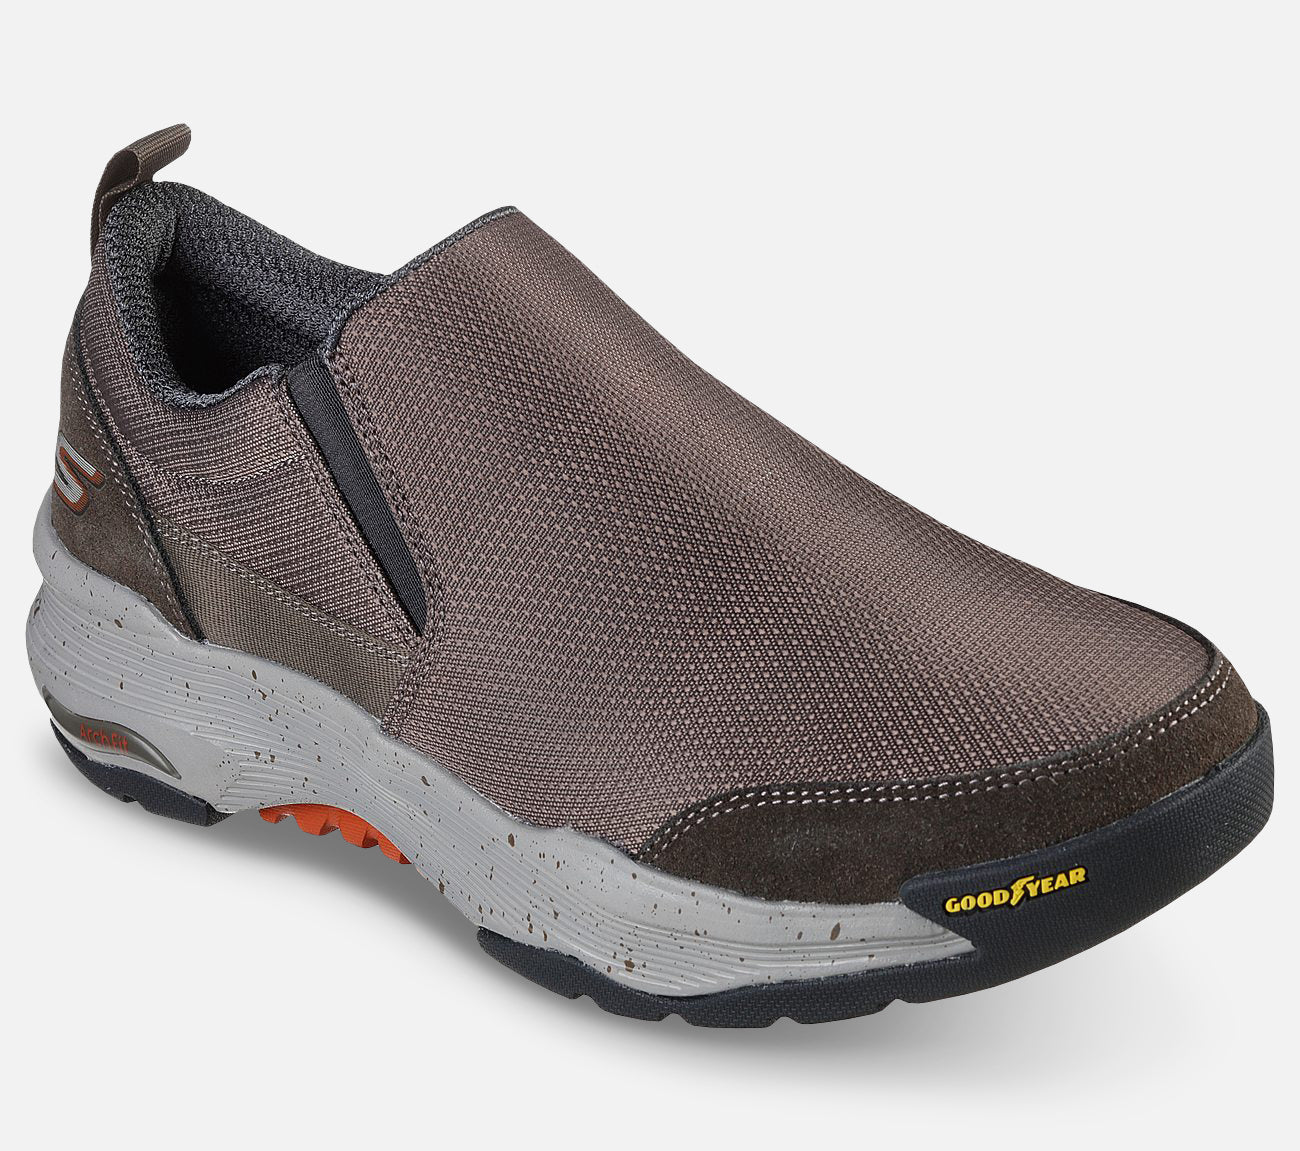 GO WALK Arch Fit Outdoor: Castle Rock - Water Repellent Shoe Skechers